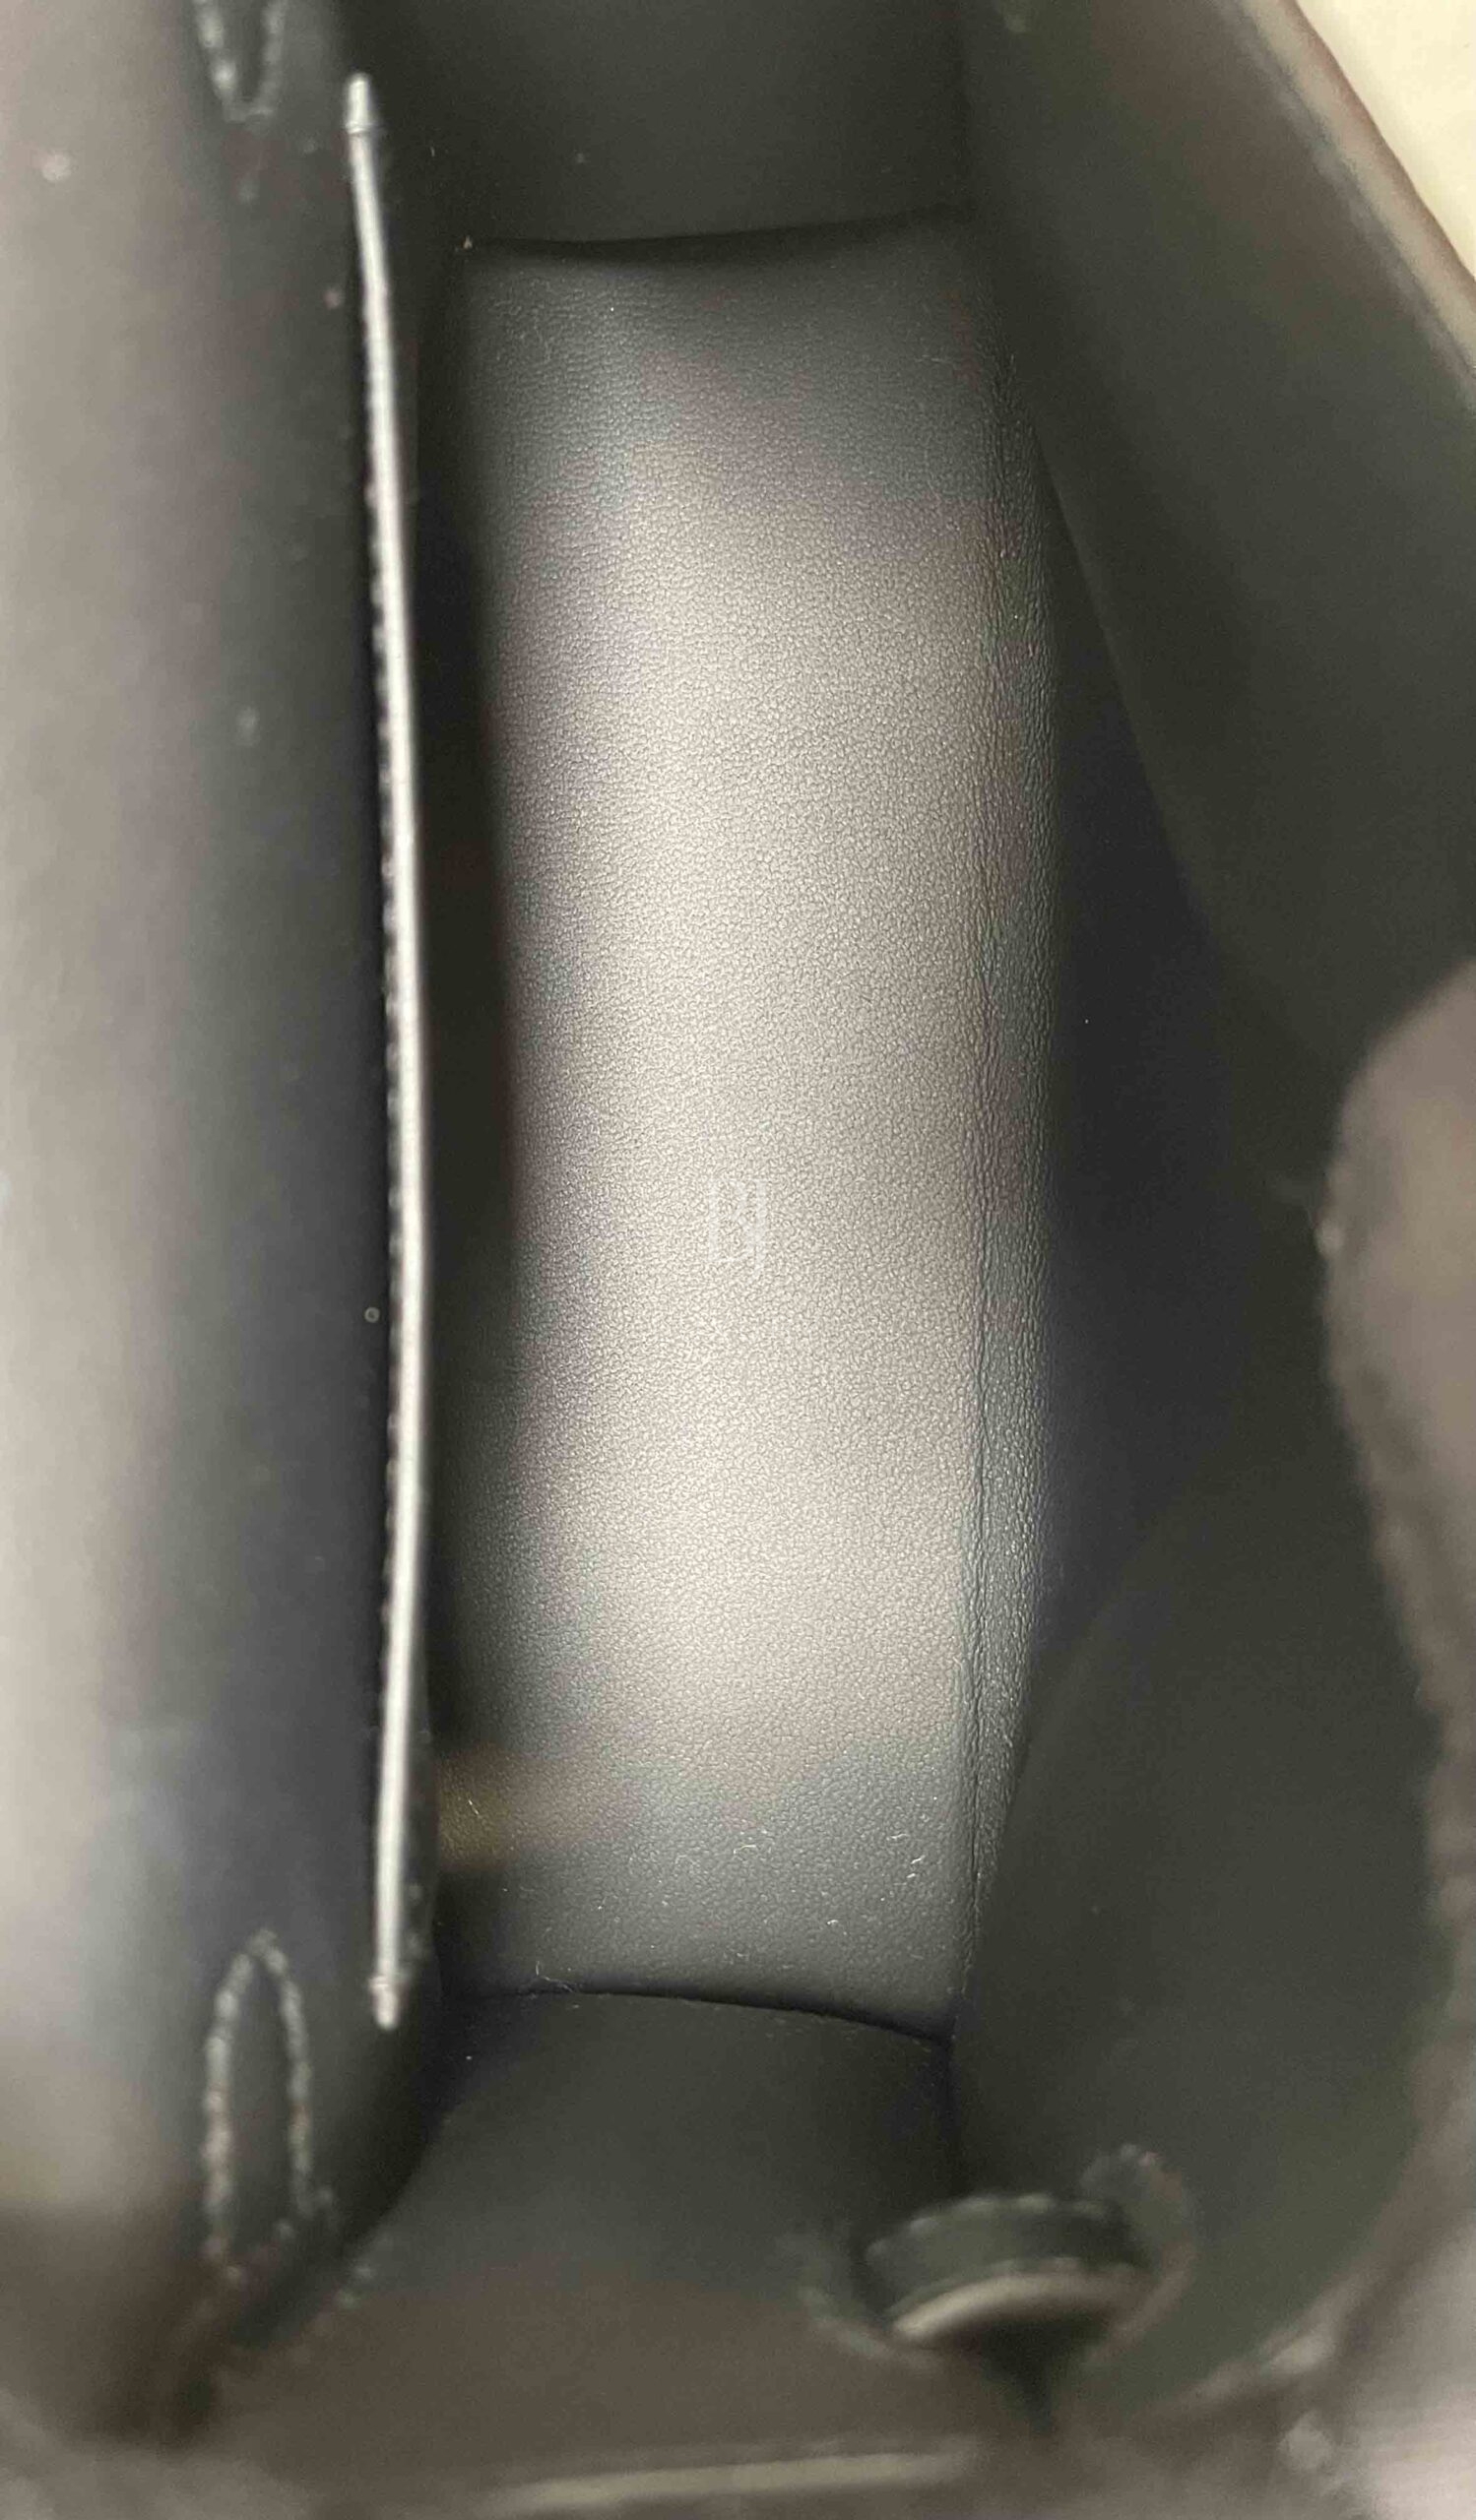 HERMES-KELLYSELLIER-20-BLACK-EPSOM-Photo 13-10-22, 5 30 24 PM.jpg